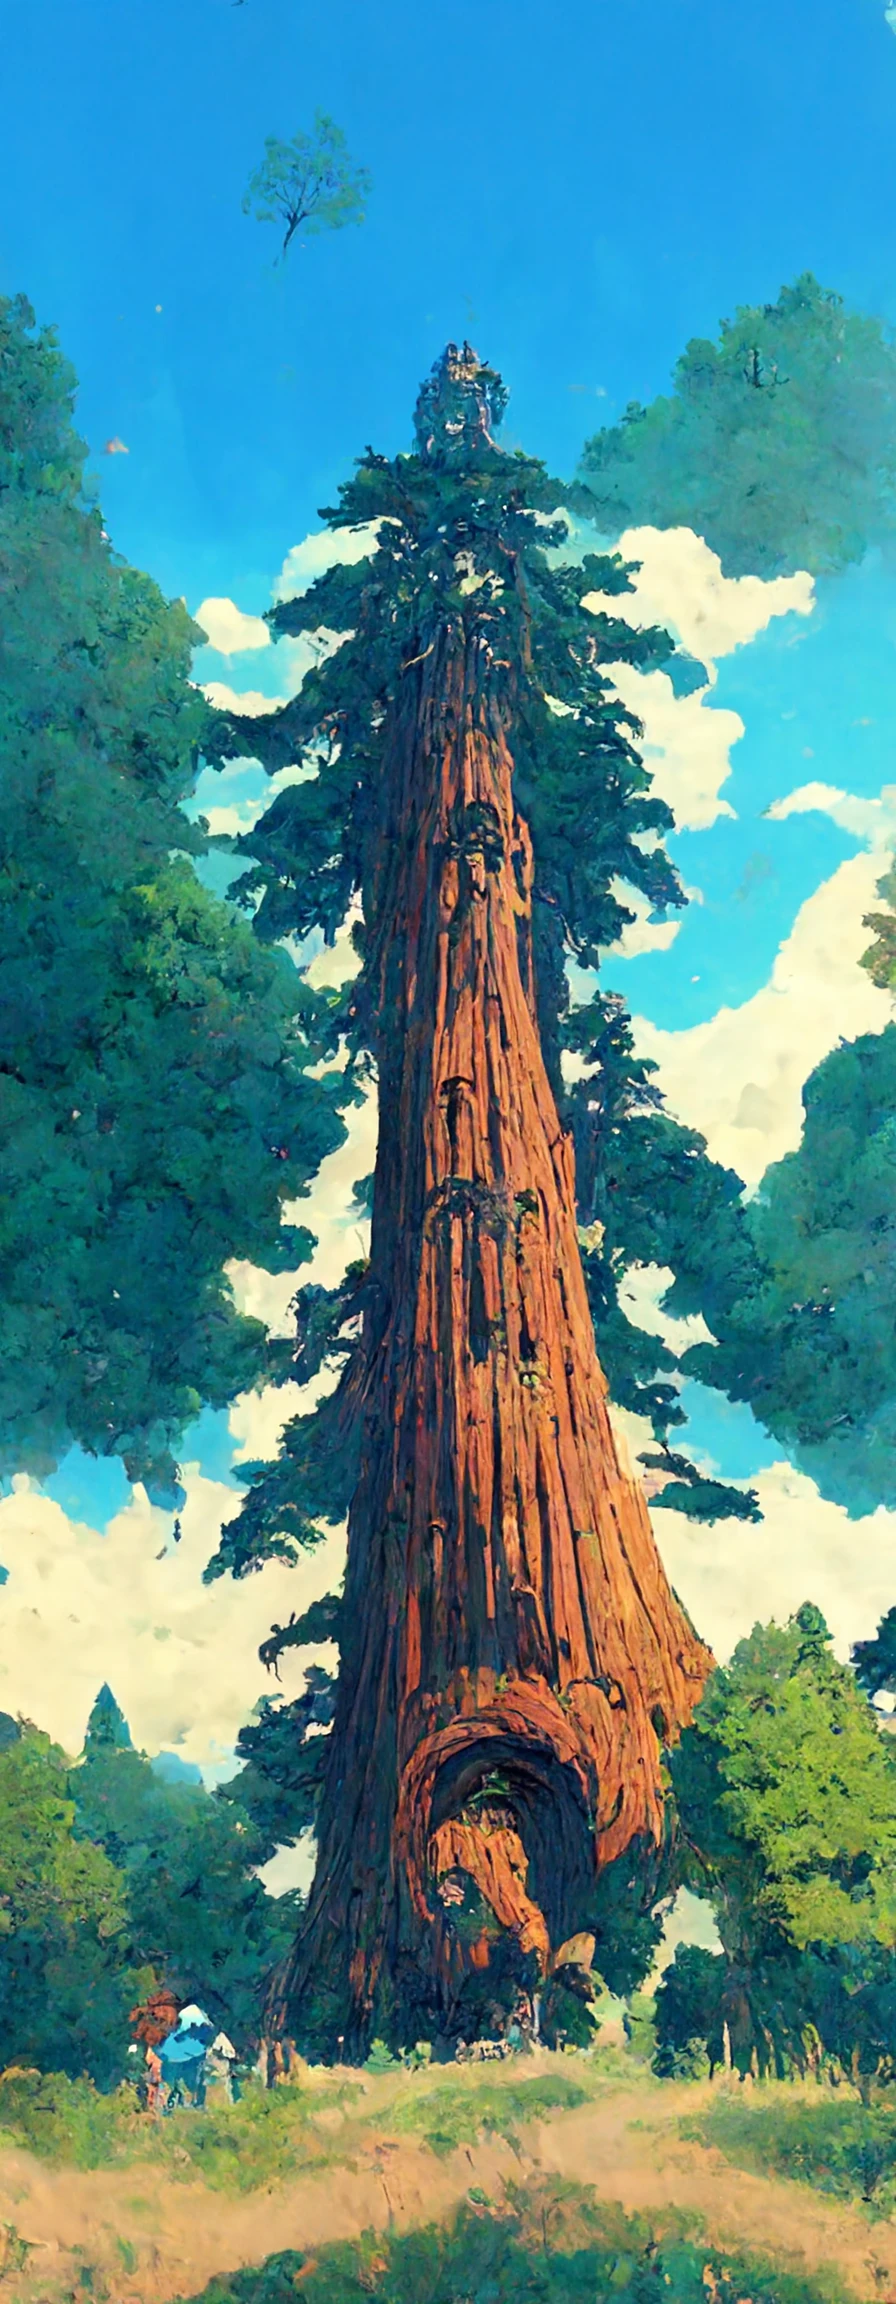 宫崎骏吉卜力创作的史诗般红杉树